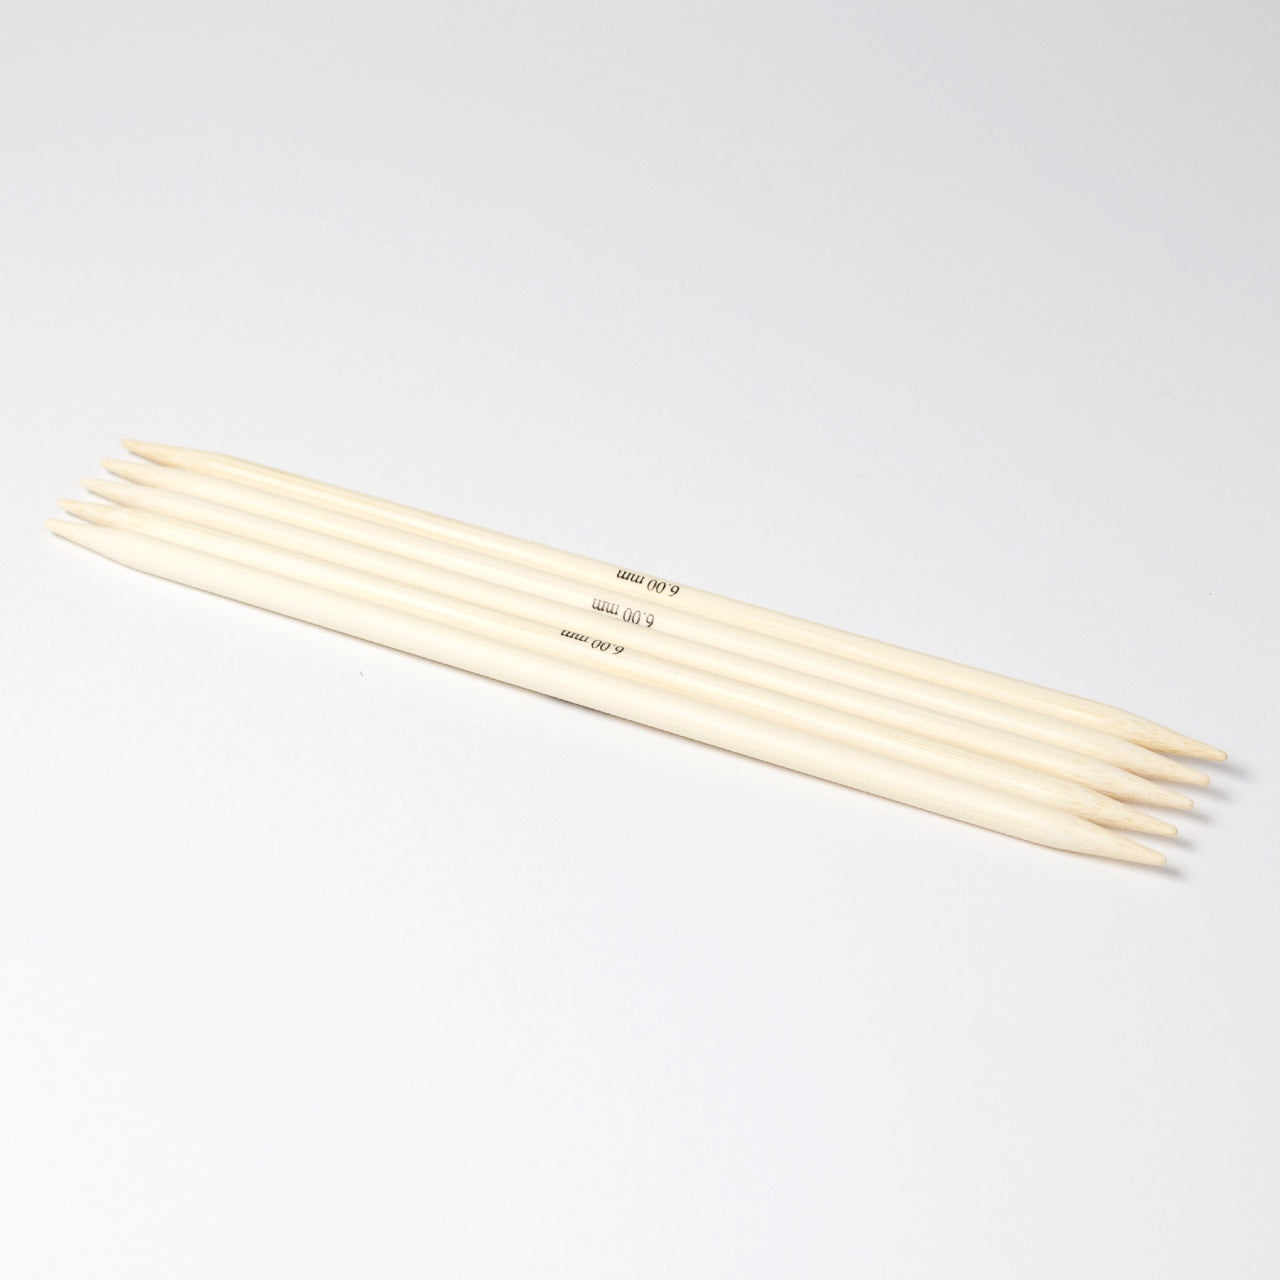 Hjertegarn // STYLE BAMBOO // Strømpepinde 20 cm i bambus str. 6 mm